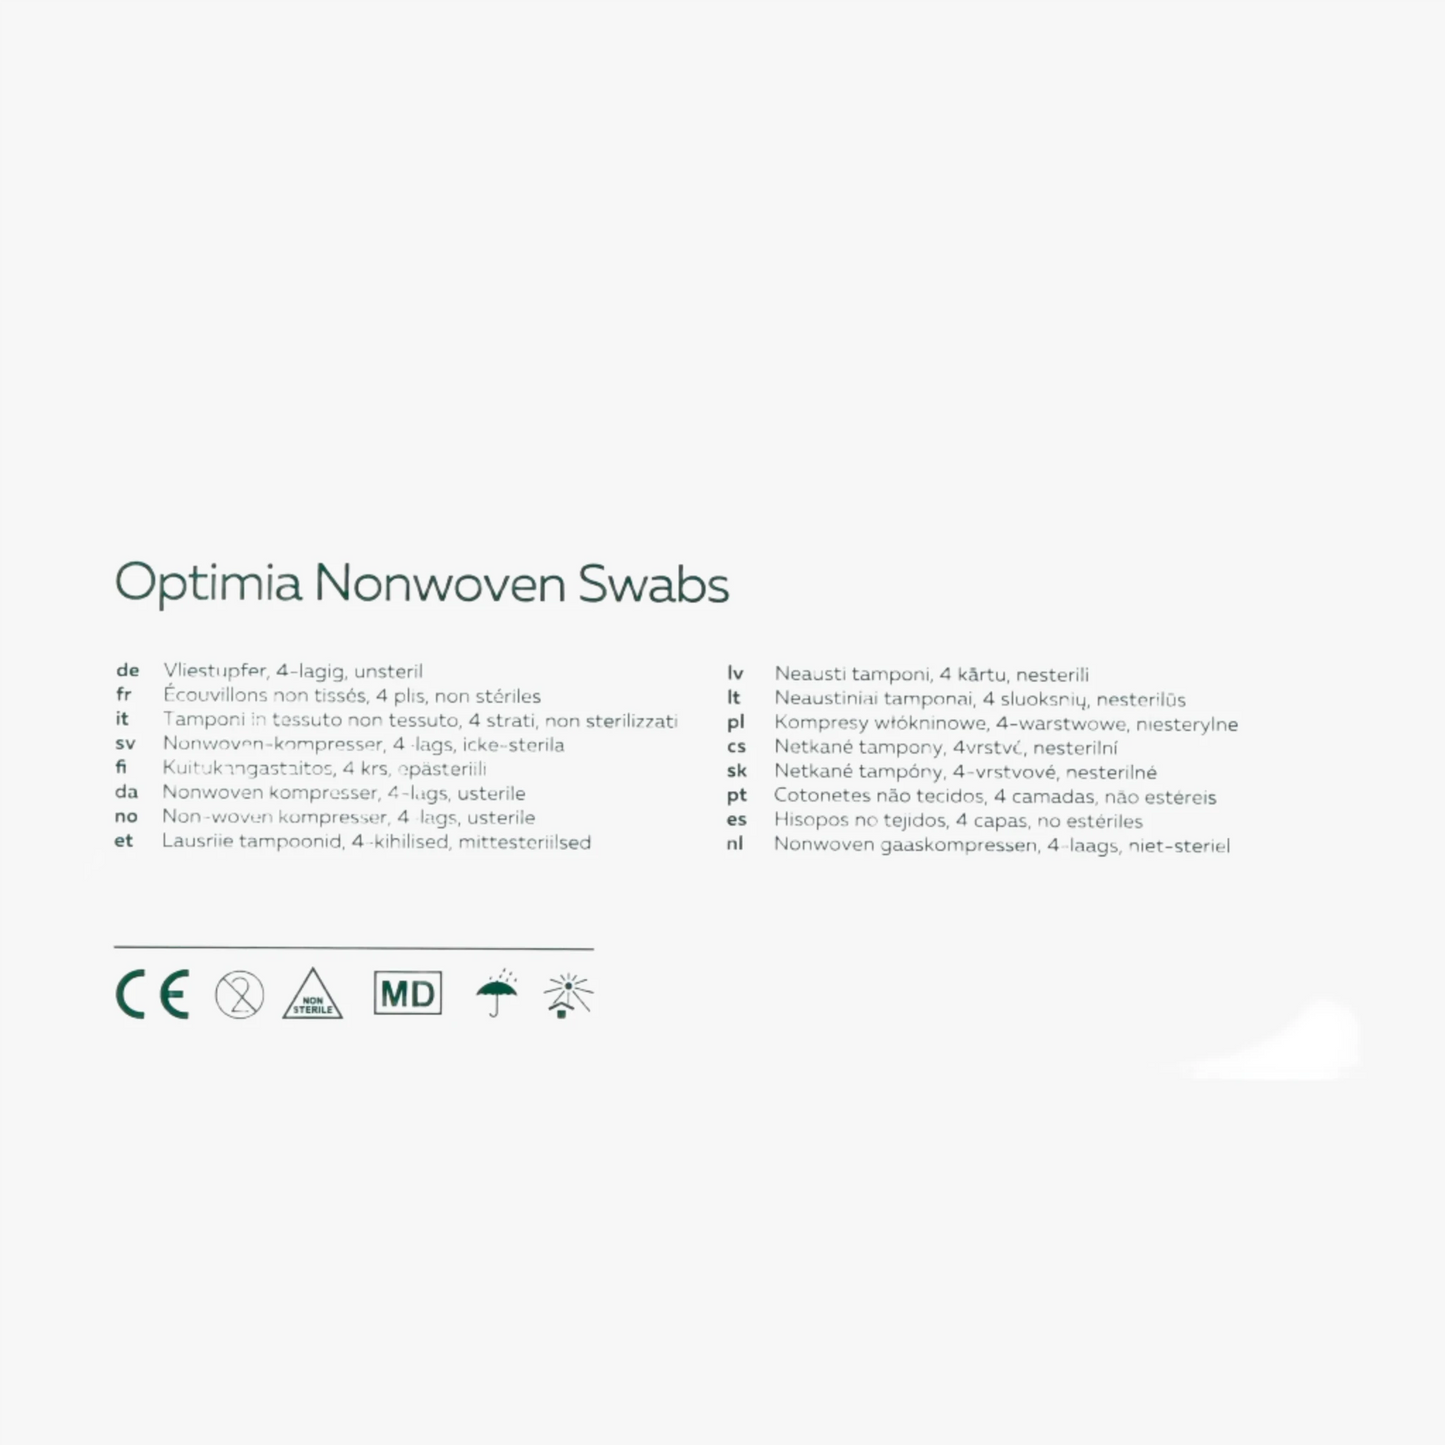 Kompress Embra — Nonwoven 4L 10x10cm osteril 150st